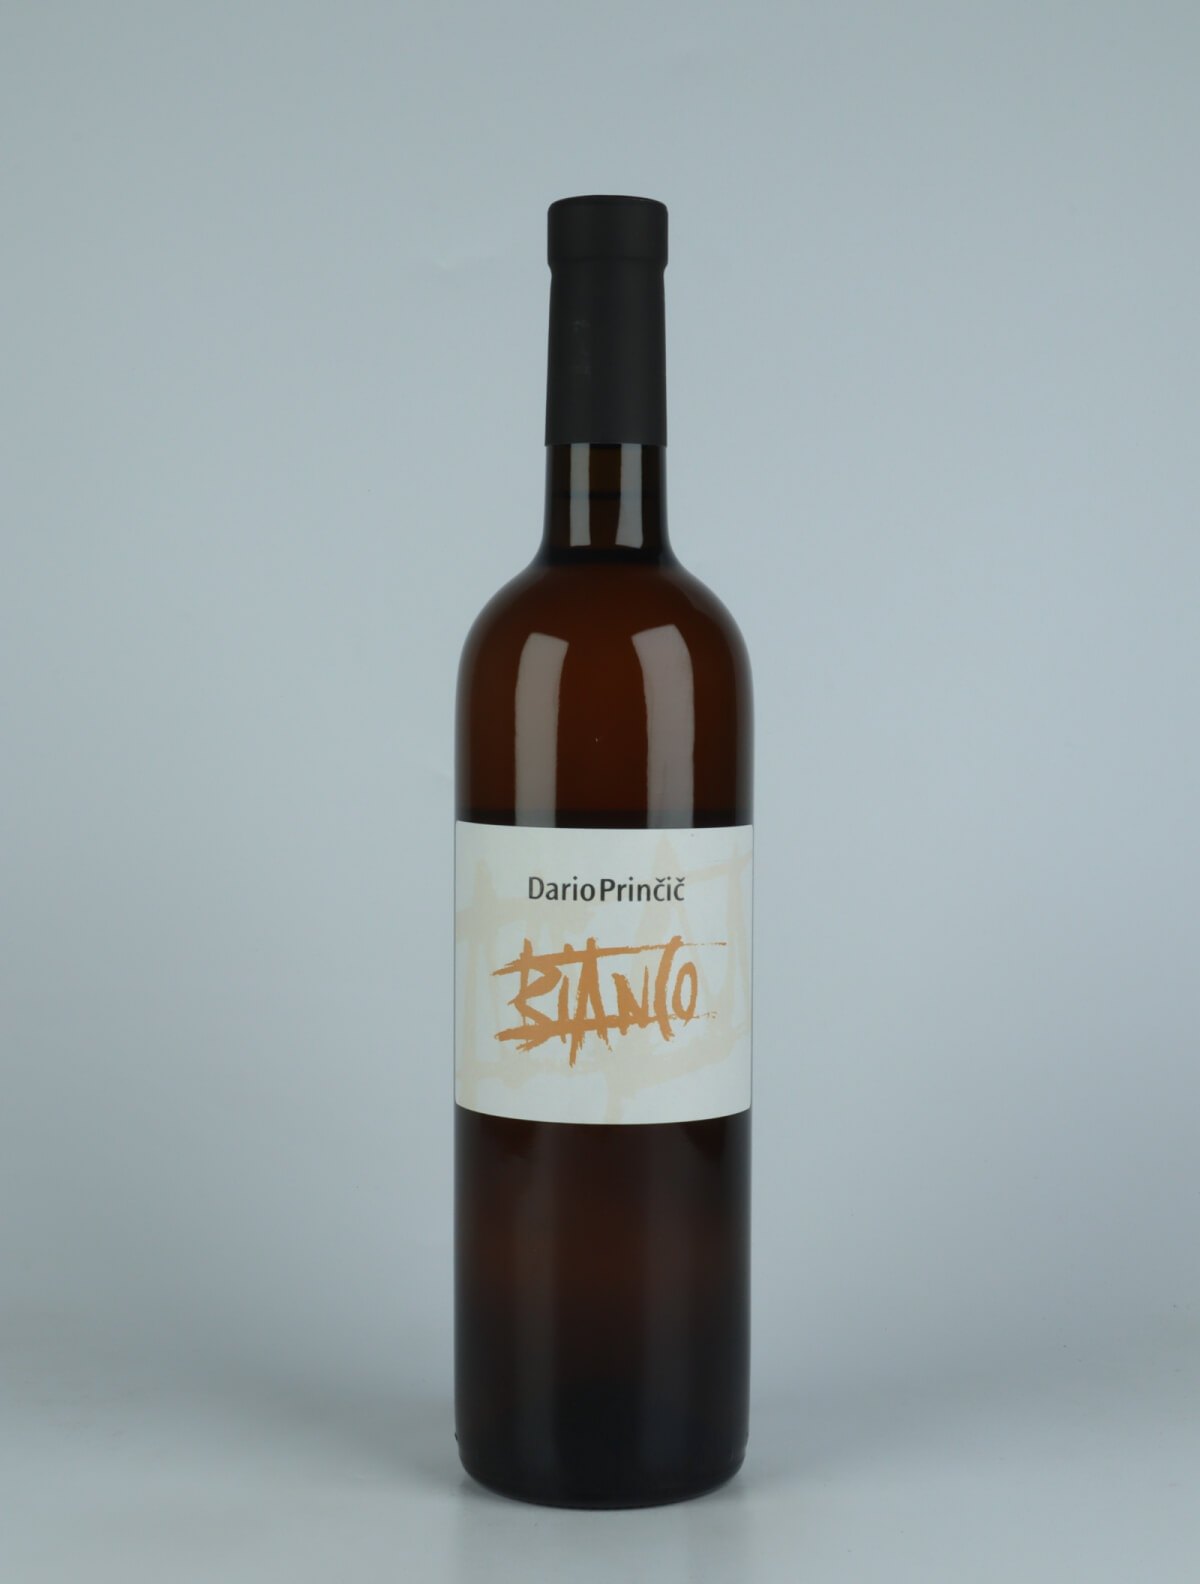 A bottle N.V. Bianco (Lot 22) Orange wine from Dario Princic, Friuli in Italy